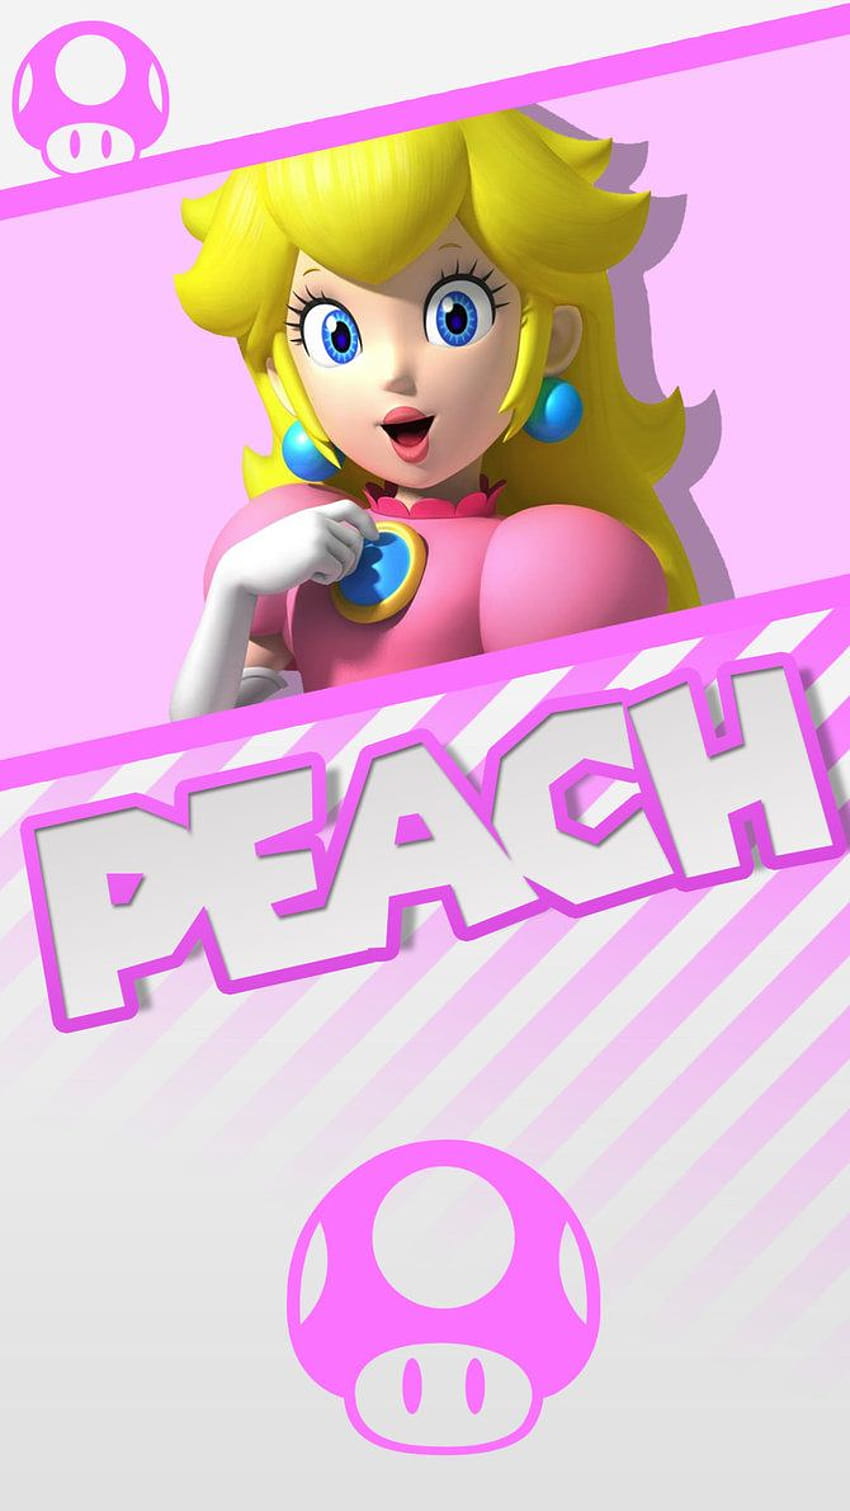 Peach Super Mario Phone by MrThatKidAlex24, princess peach phone HD phone wallpaper